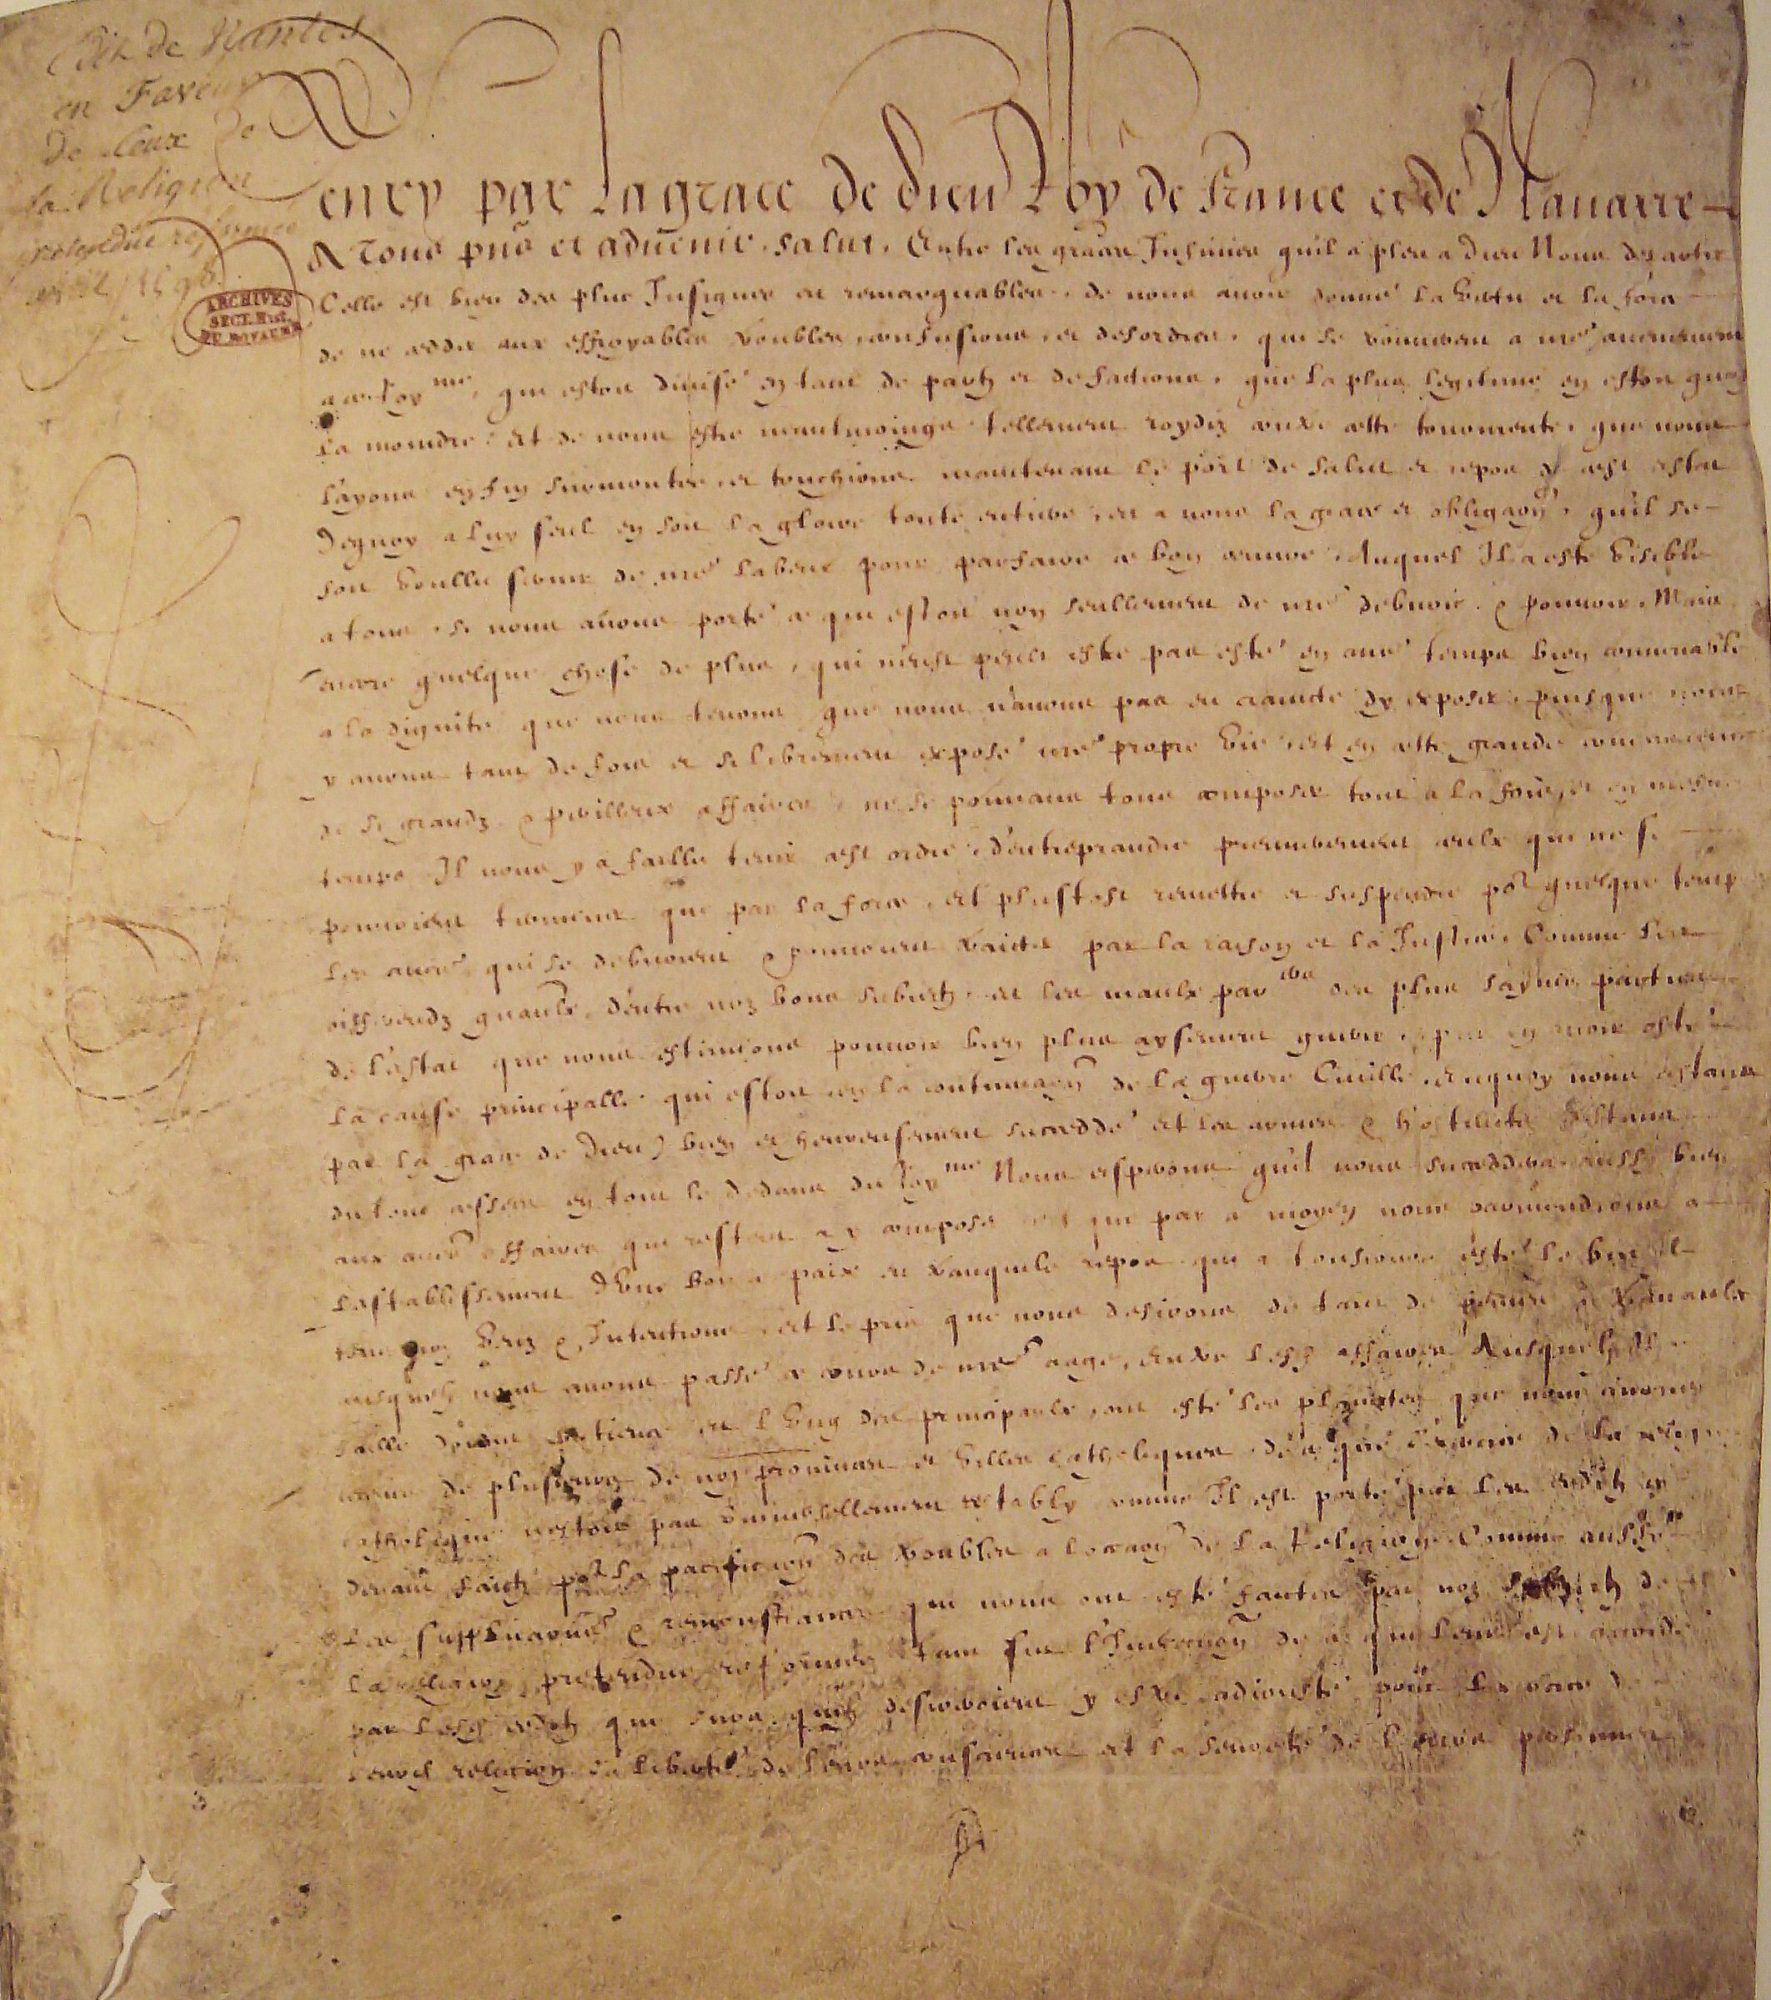 Edit de Nantes Avril 1598, Henry IV - Grands Documents de l'Histoire de France, Archives Nationales